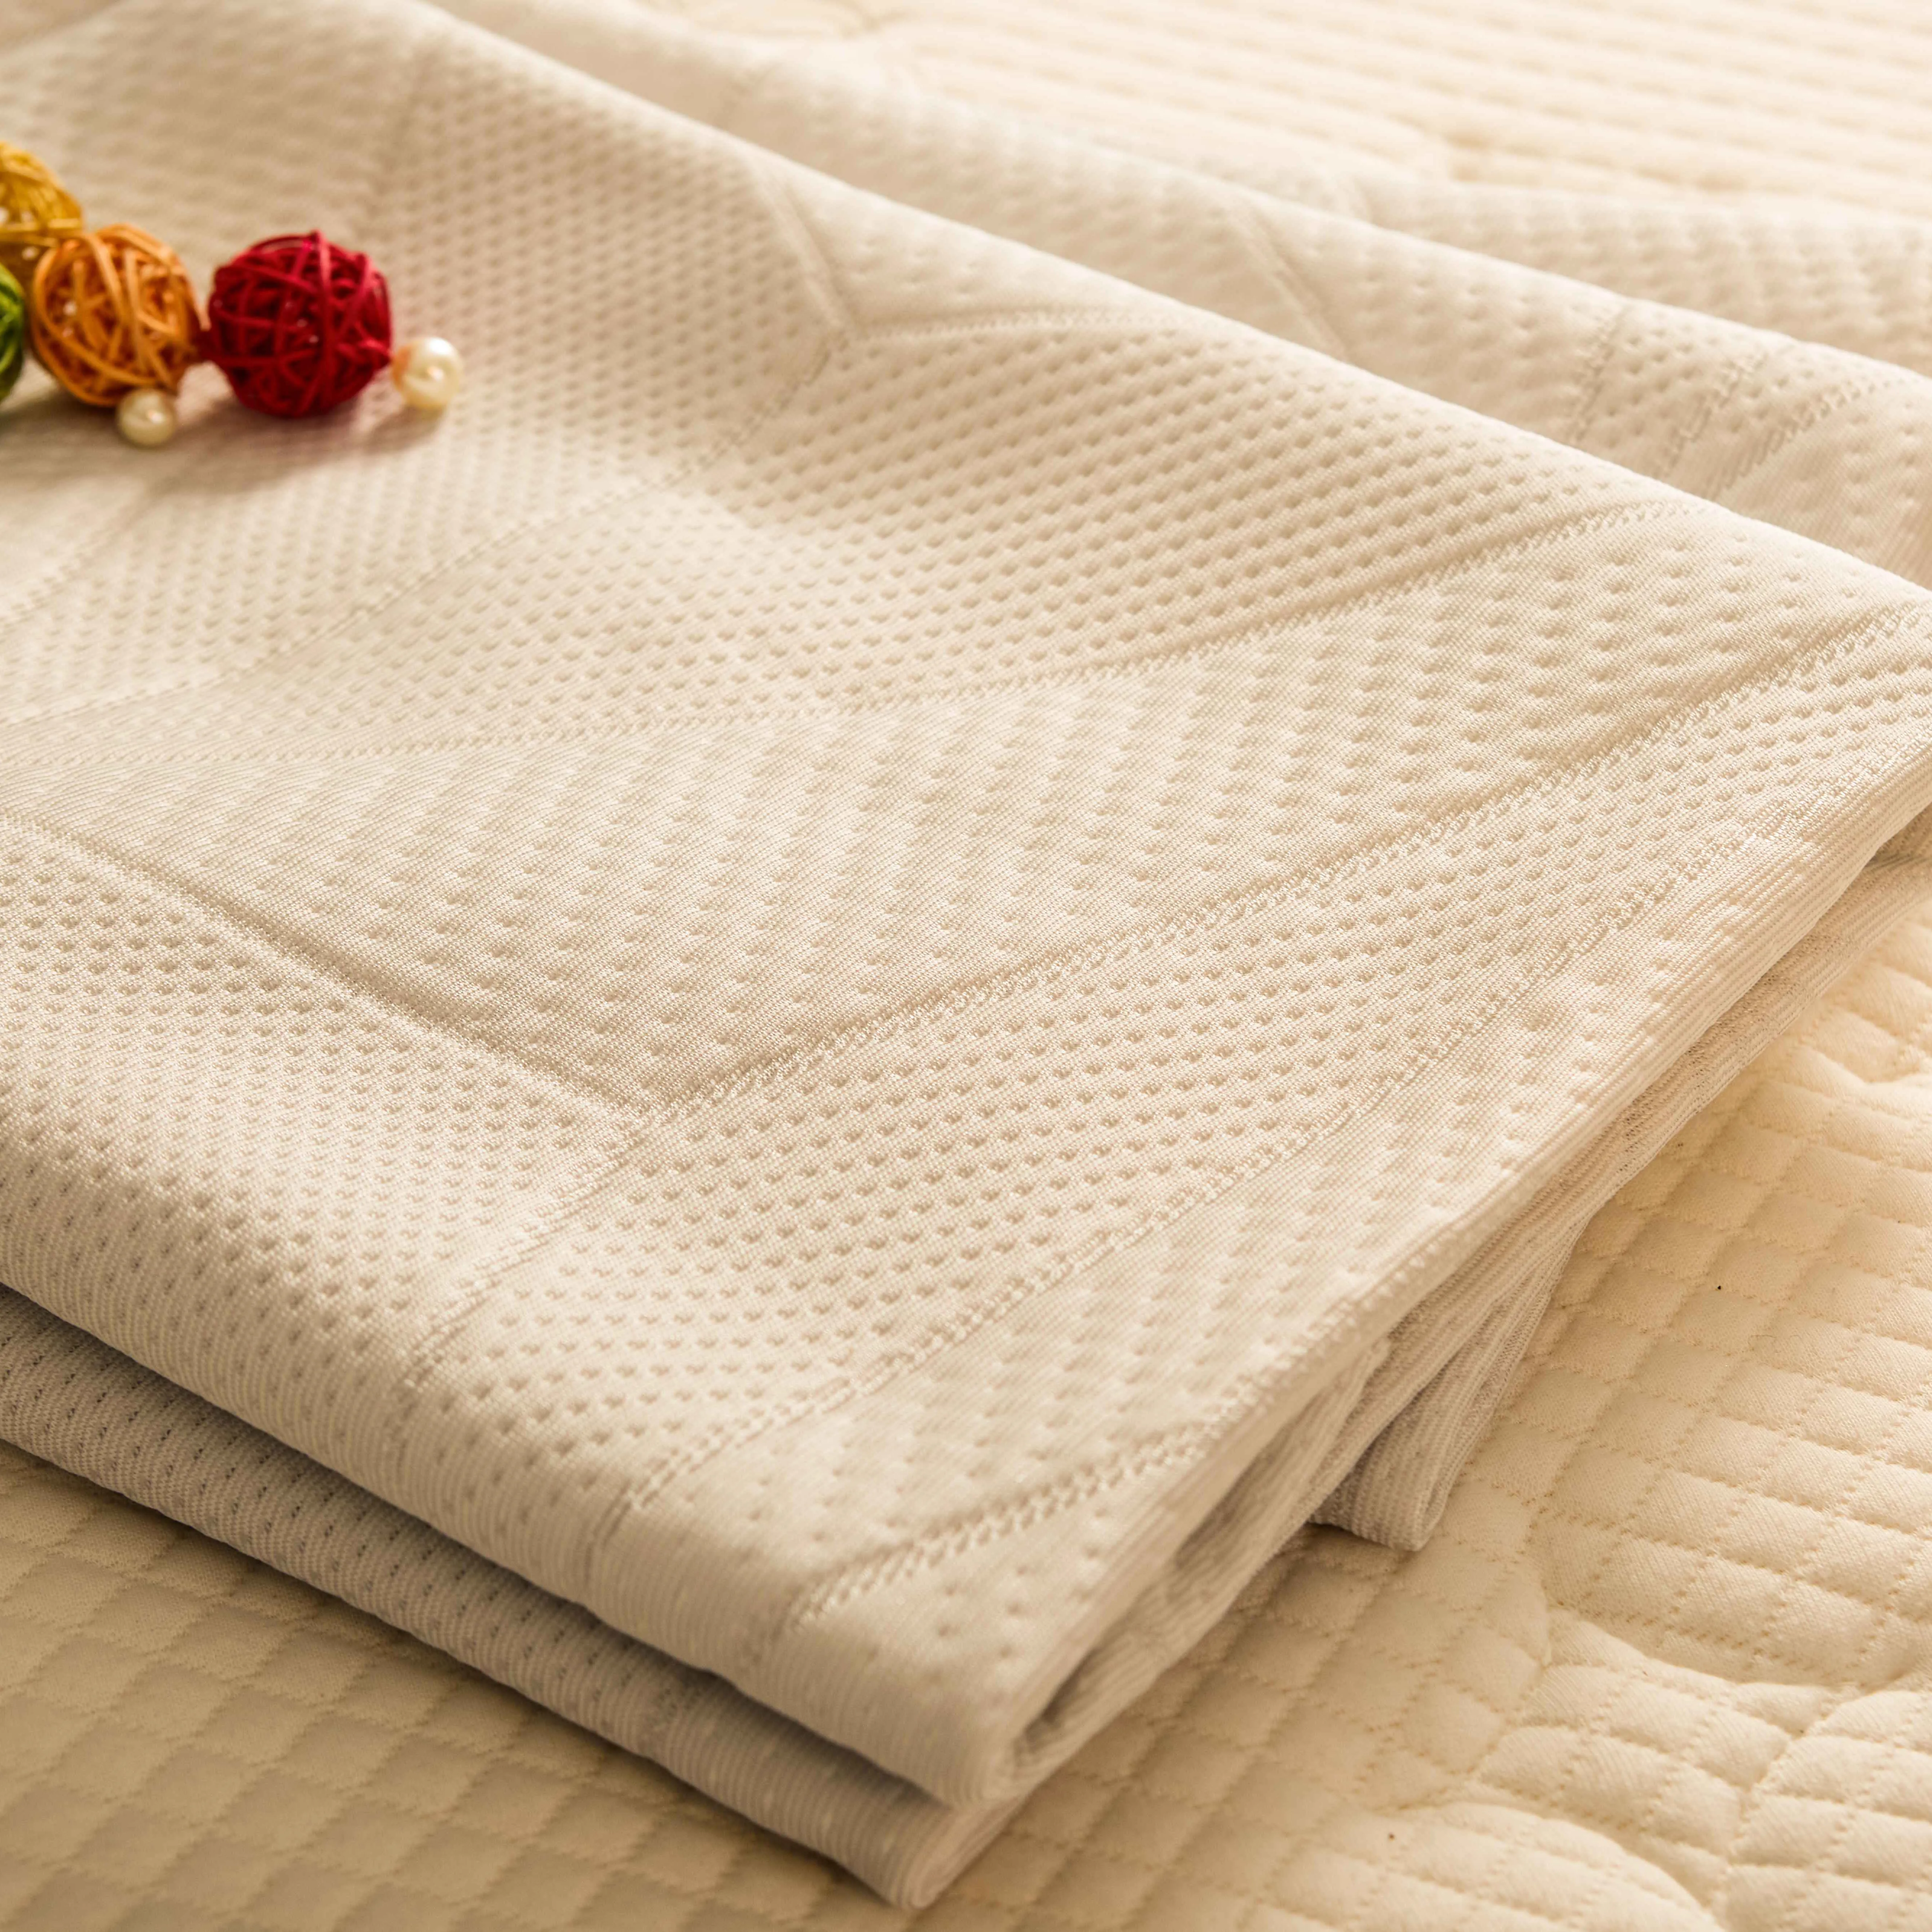 100% bianco Jacquard cotone maglia poliestere tessuto materasso per coprimaterasso